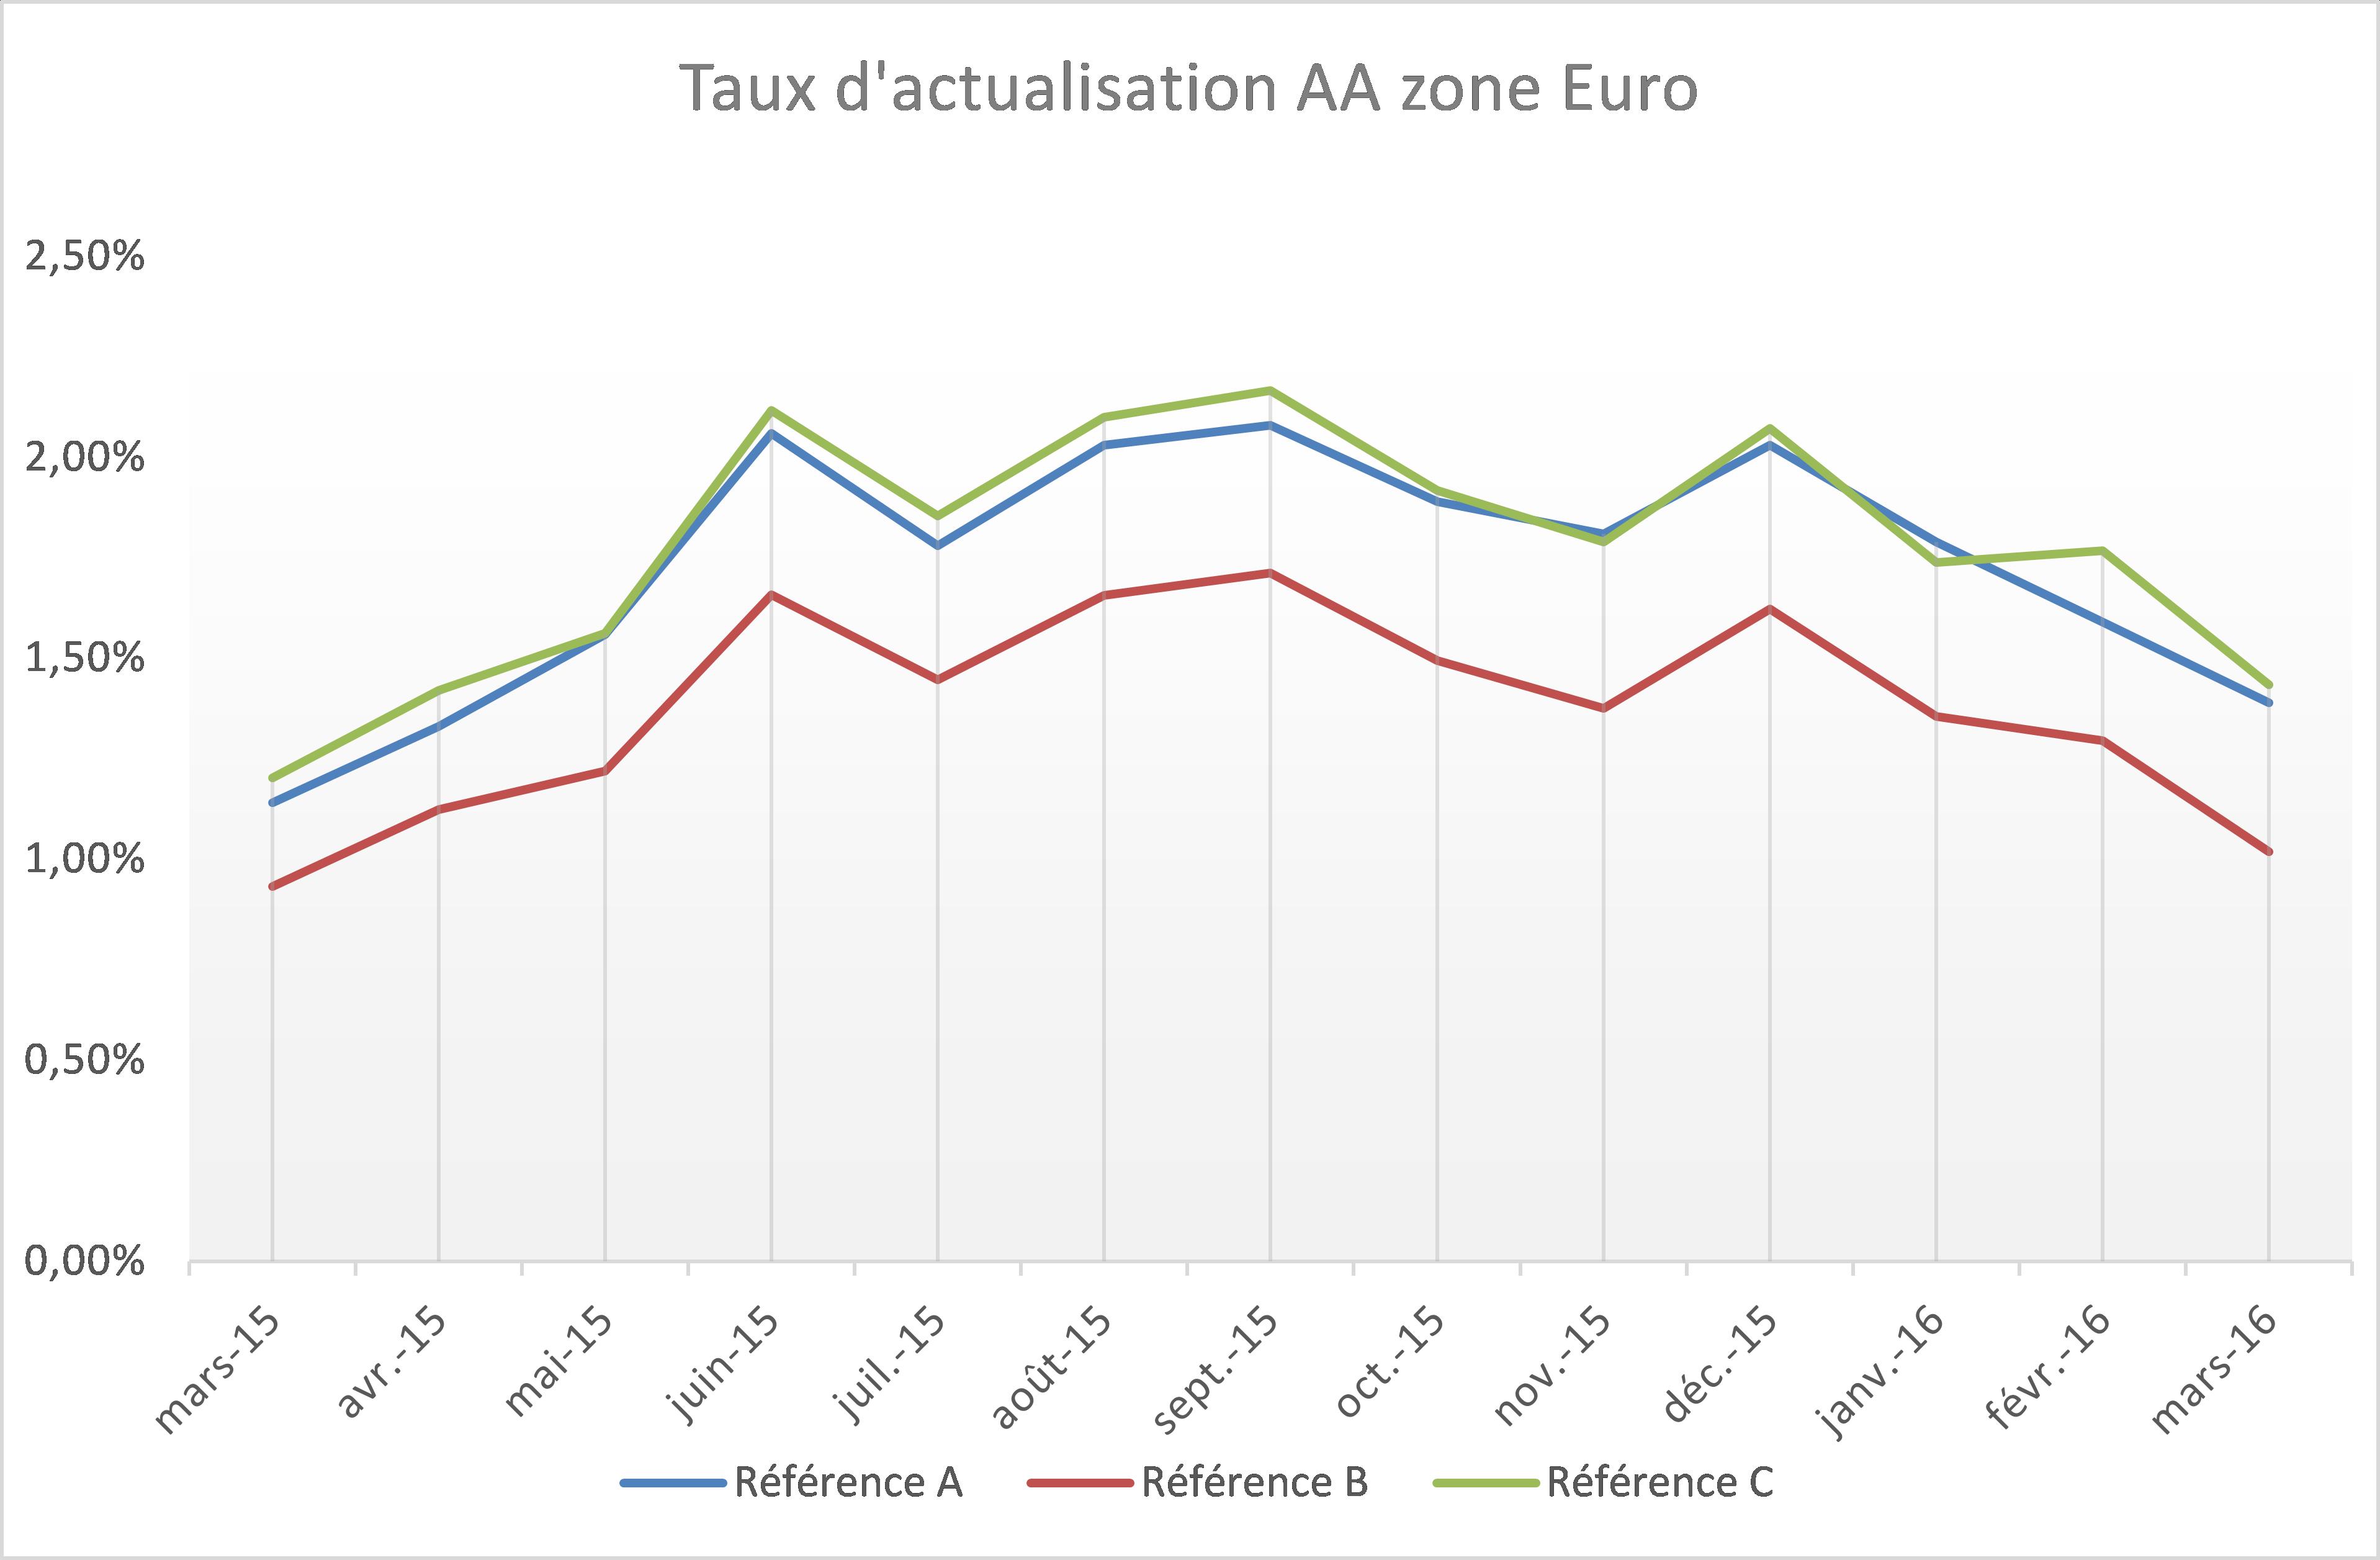 Evolution de différents indices AA long terme depuis le 31/03/2015 sur la zone Euro